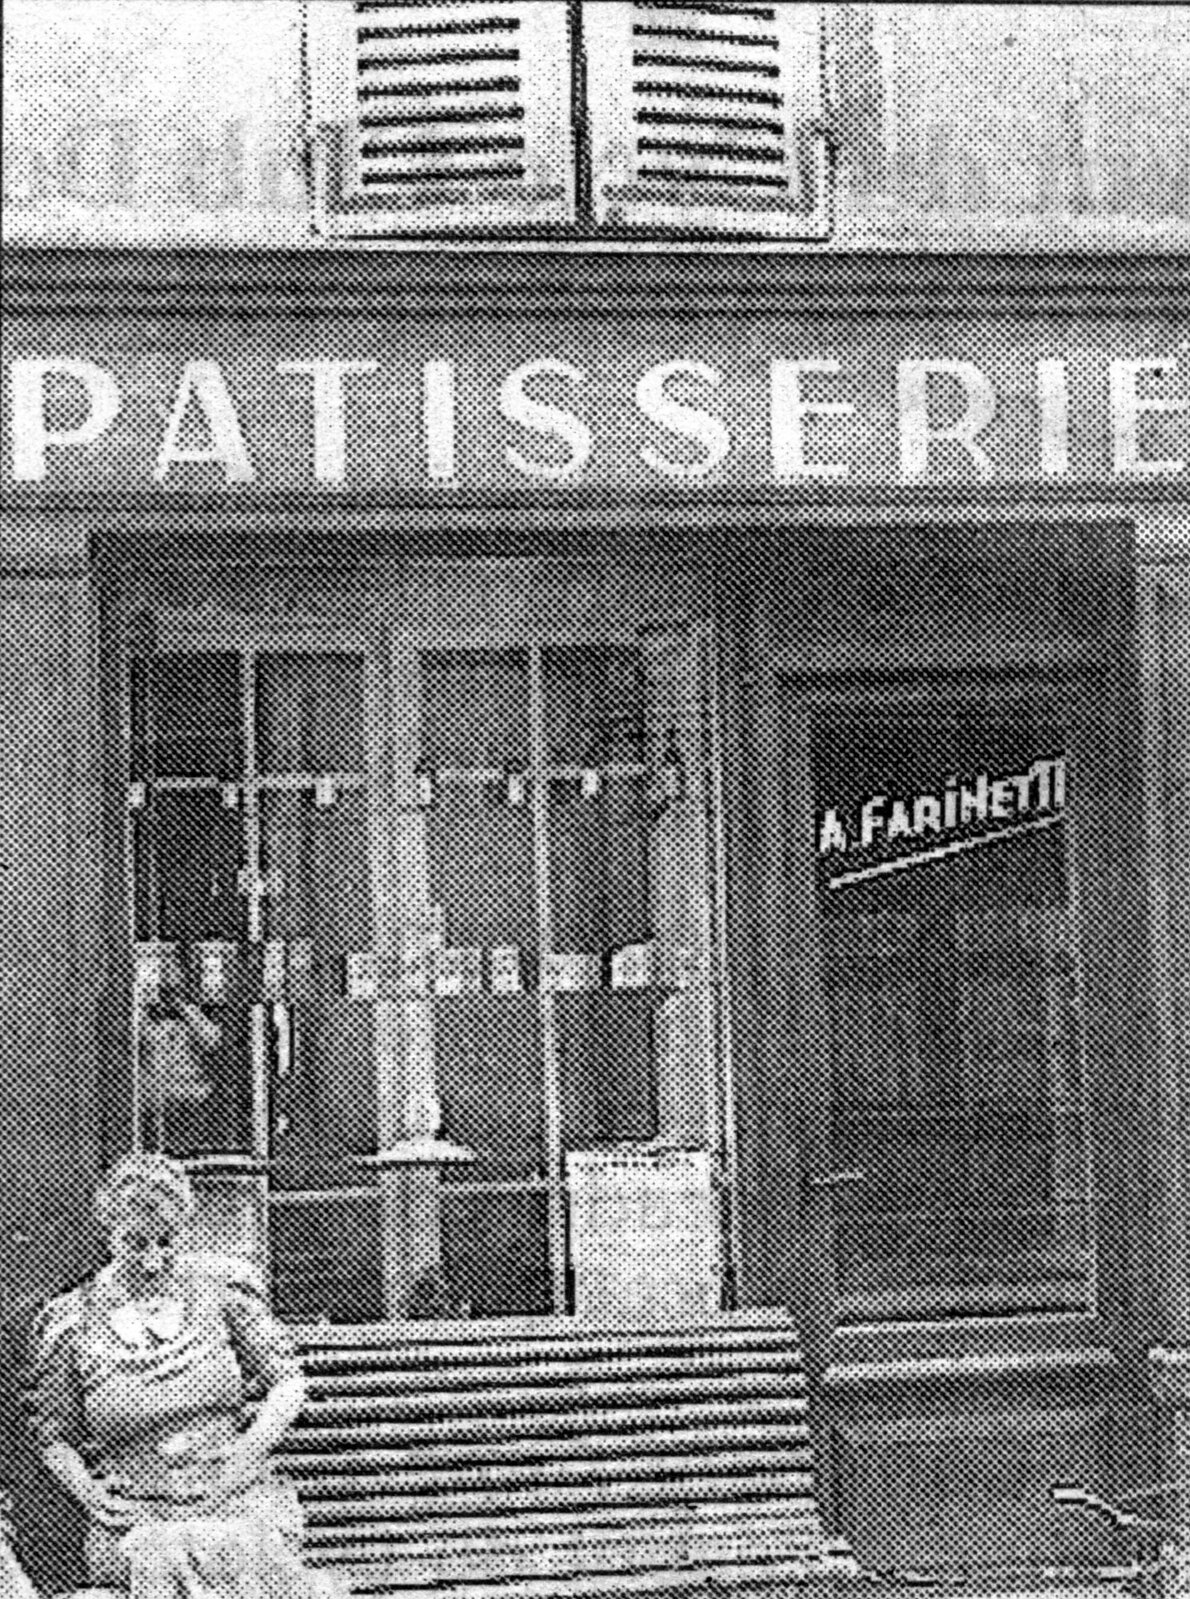 La pâtisserie Farinetti dans les années 1930